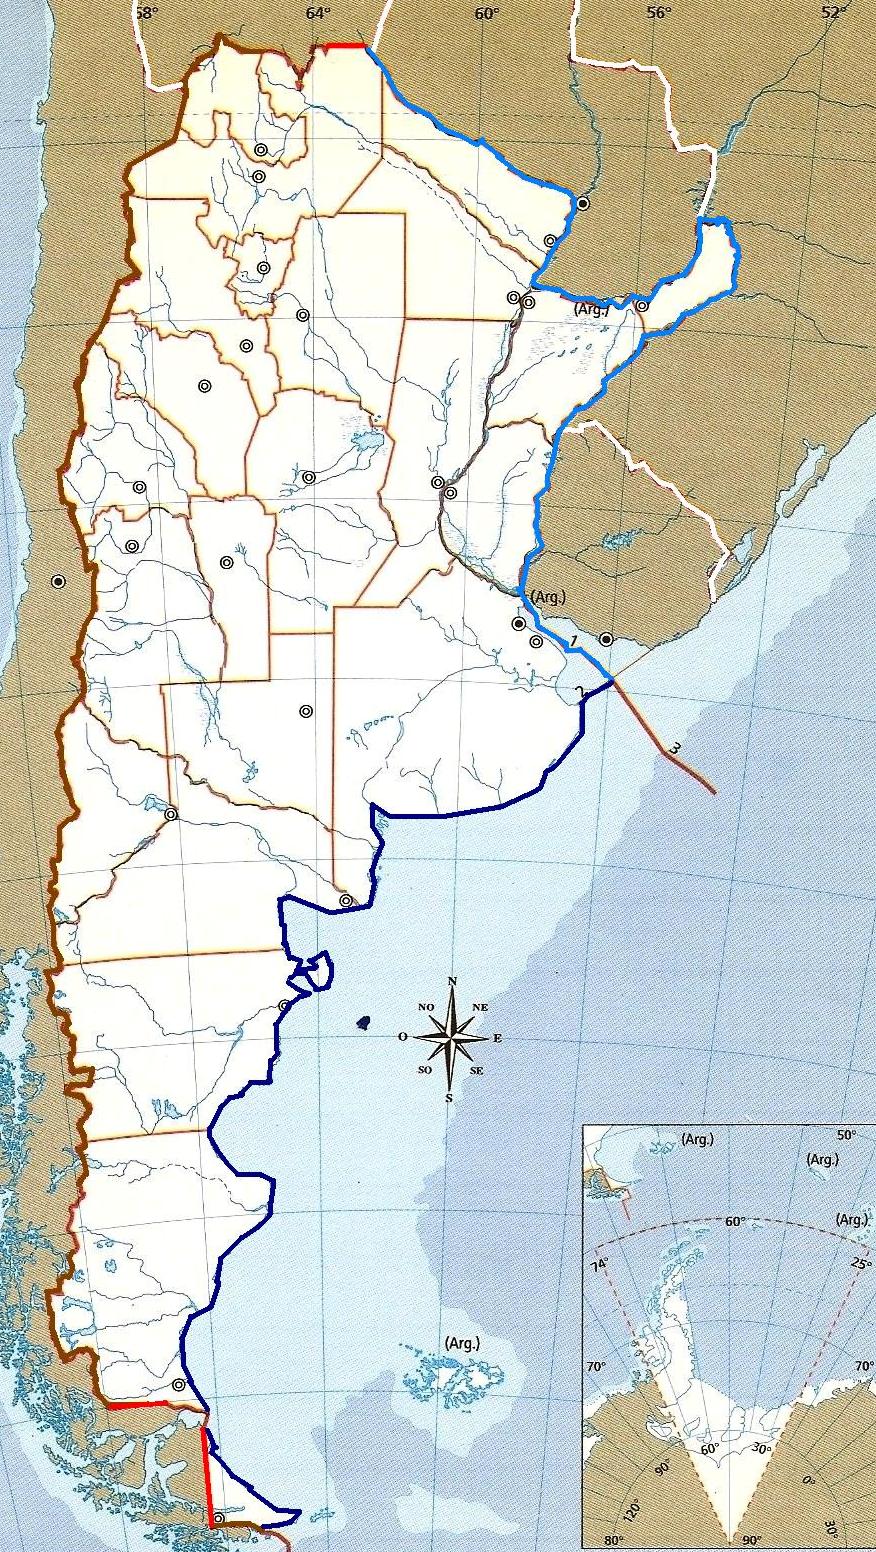 AikenGeografia :-): "El espacio geogràfico argentino" - 1º "D" - E.D.J